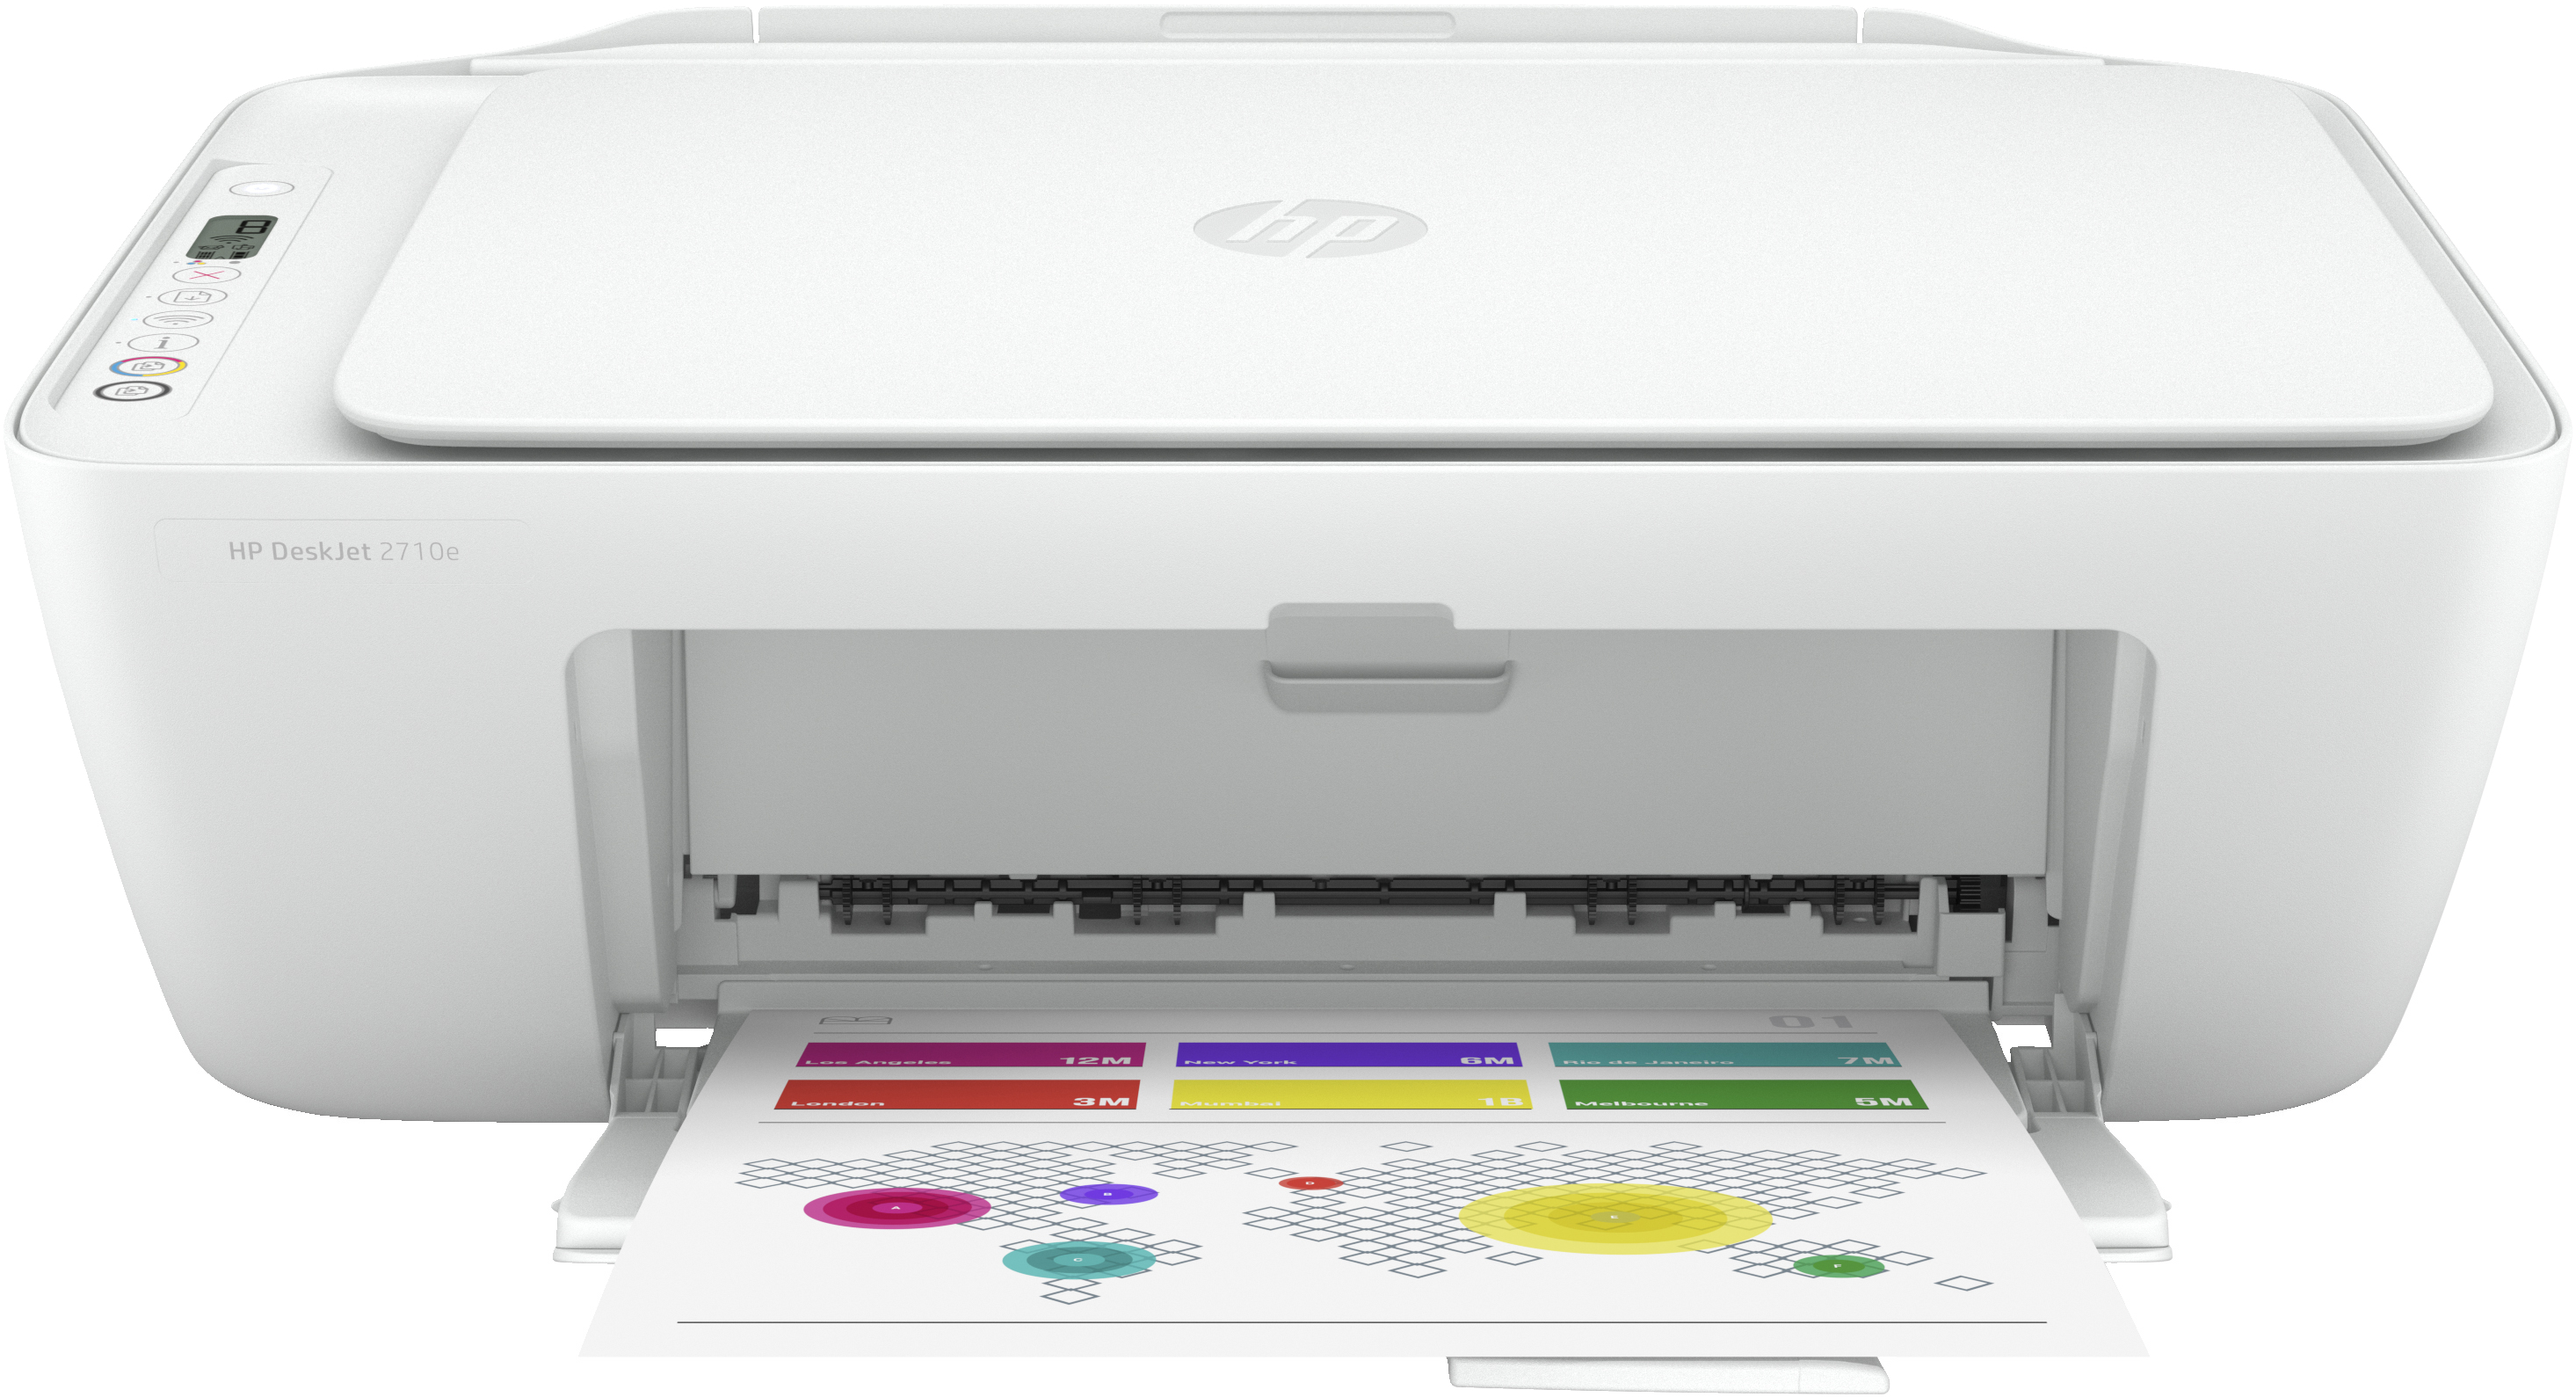 HP DeskJet Stampante multifunzione HP 2710e, Colore, Stampante per Casa,  Stampa, copia, scansione, wireless; HP+; idonea a HP Instant Ink; stampa da  smartphone o tablet: offerte e prezzo